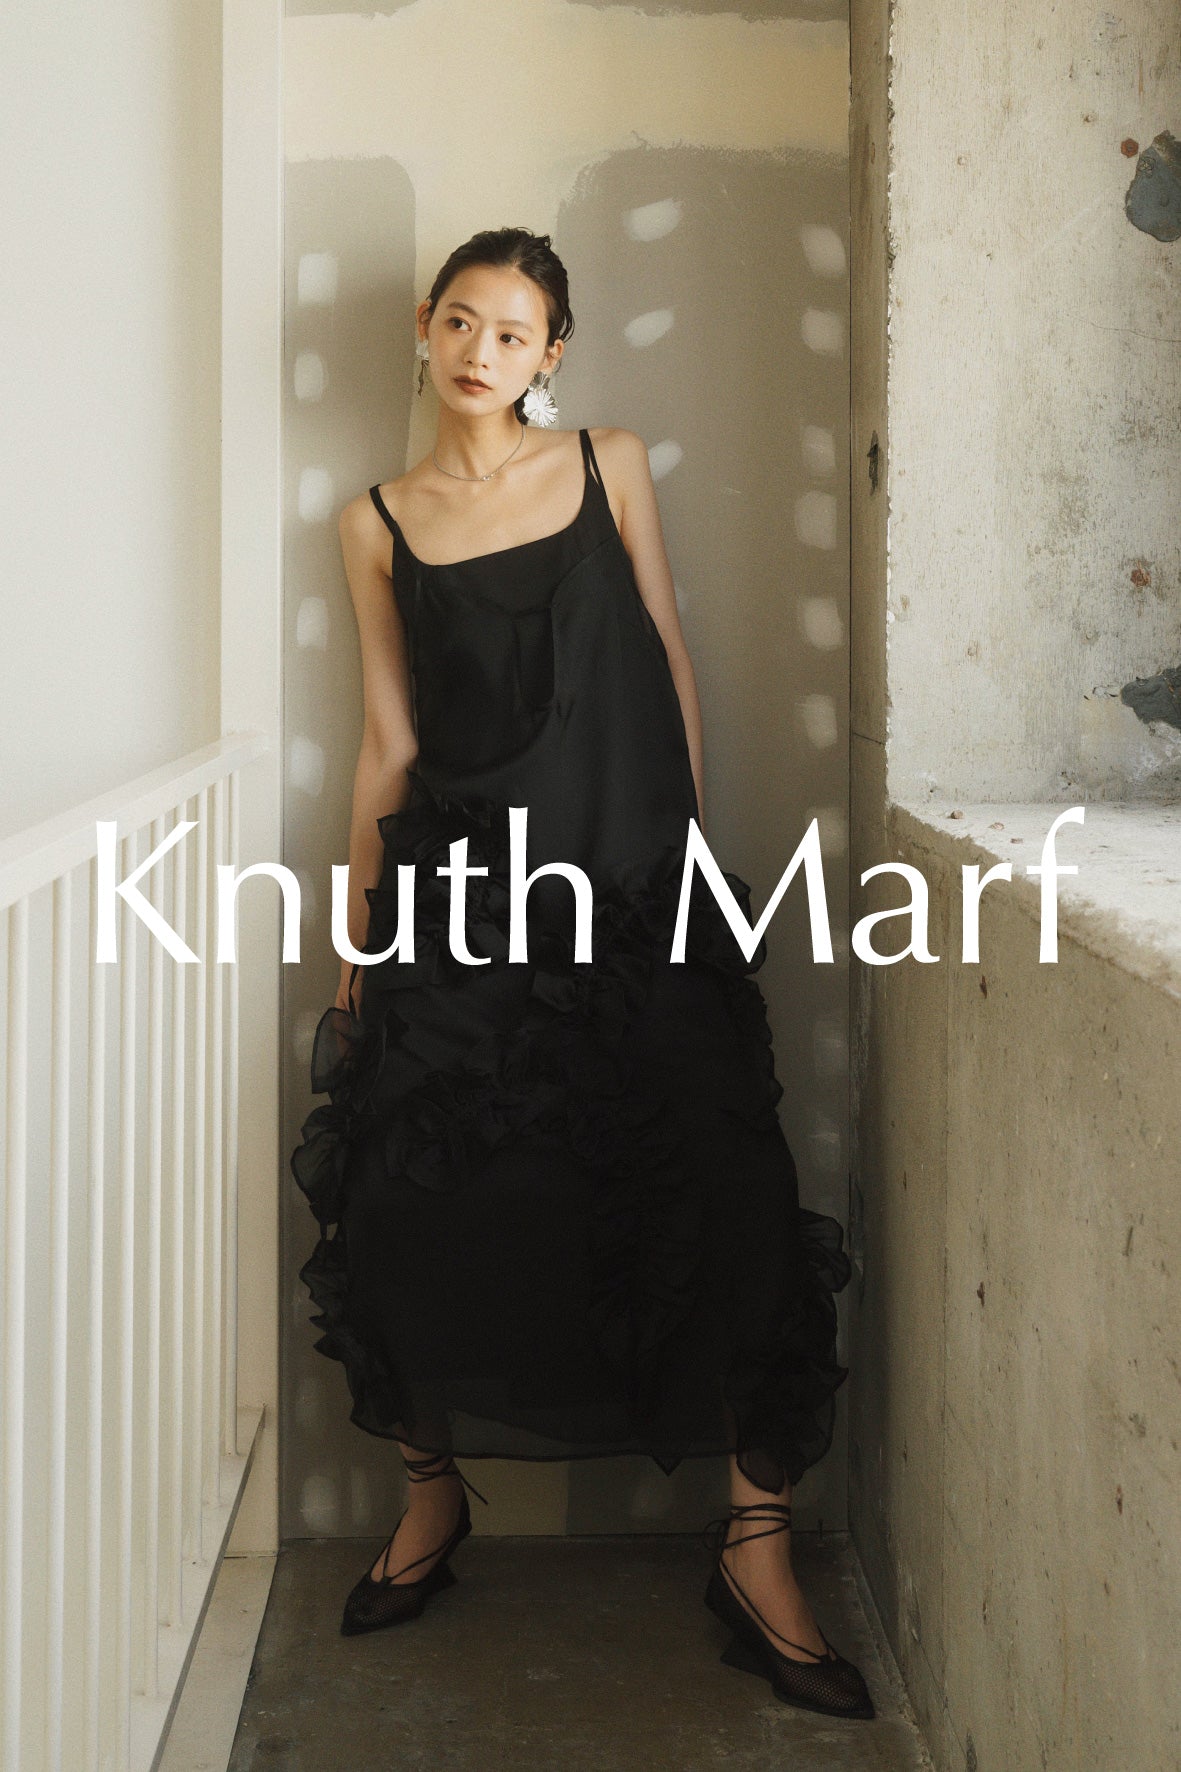 Knuth Marf | KNUTH MARF